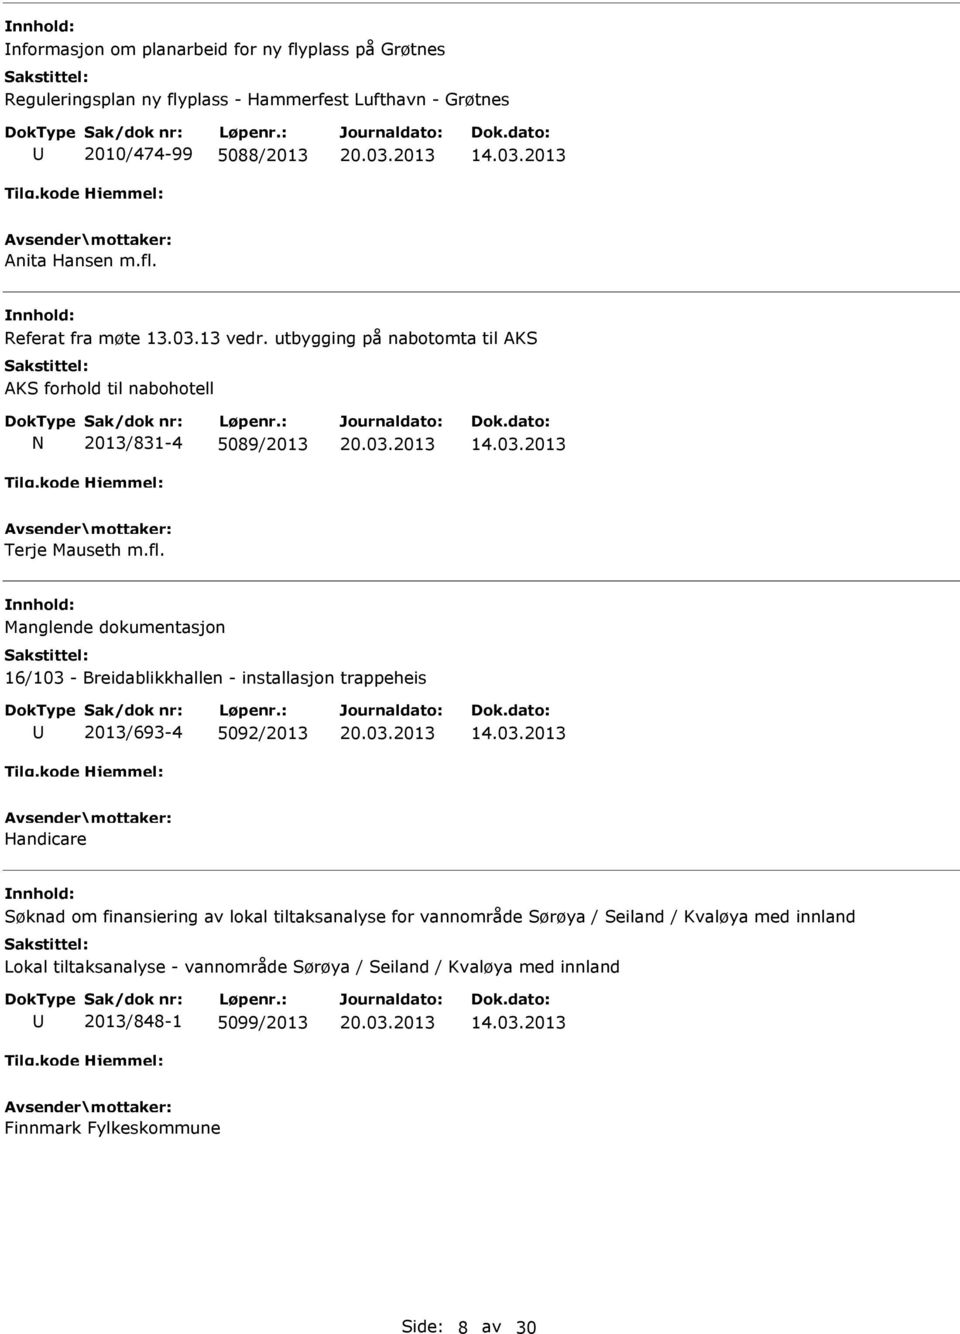 Manglende dokumentasjon 16/103 - Breidablikkhallen - installasjon trappeheis 2013/693-4 5092/2013 Handicare Søknad om finansiering av lokal tiltaksanalyse